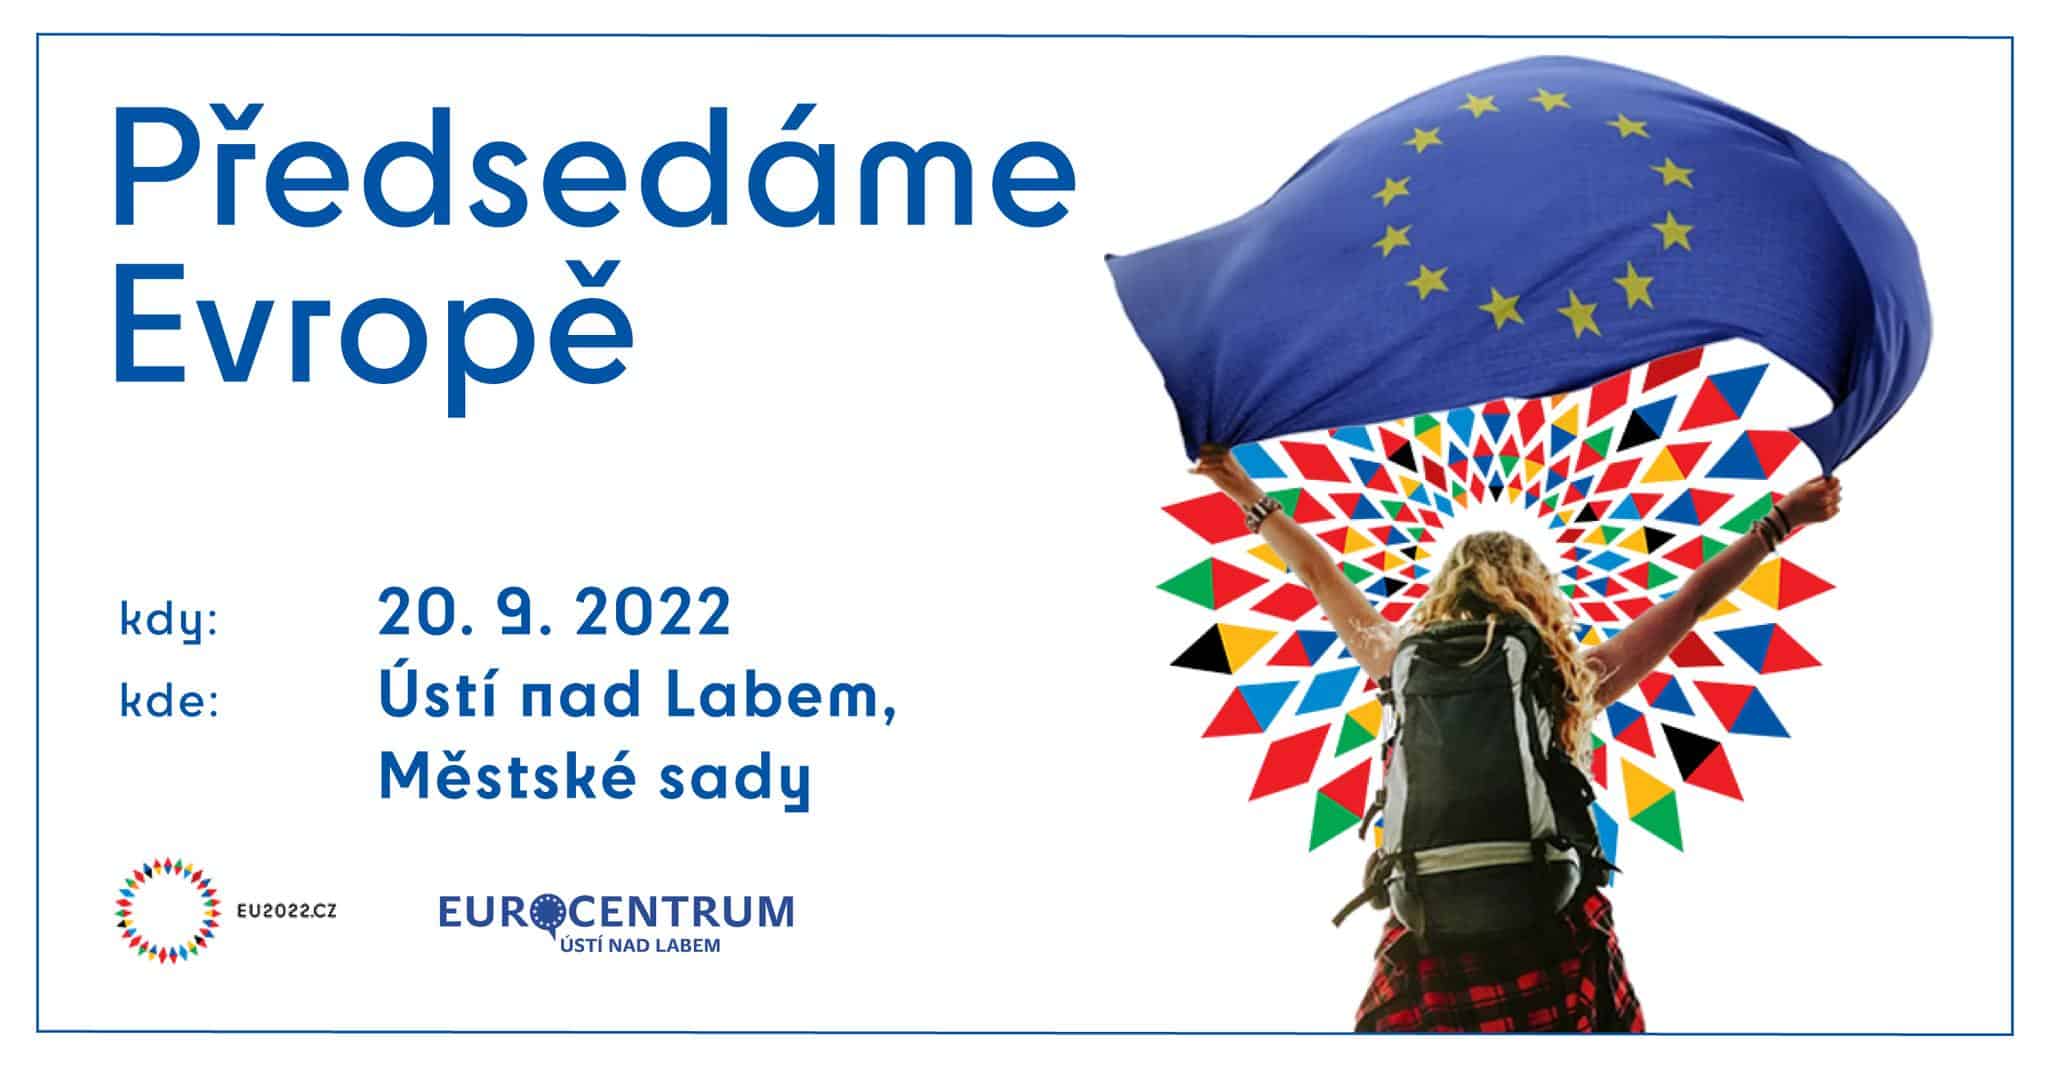 Přečtete si více ze článku Předsedáme Evropě, tentokrát v Ústí nad Labem